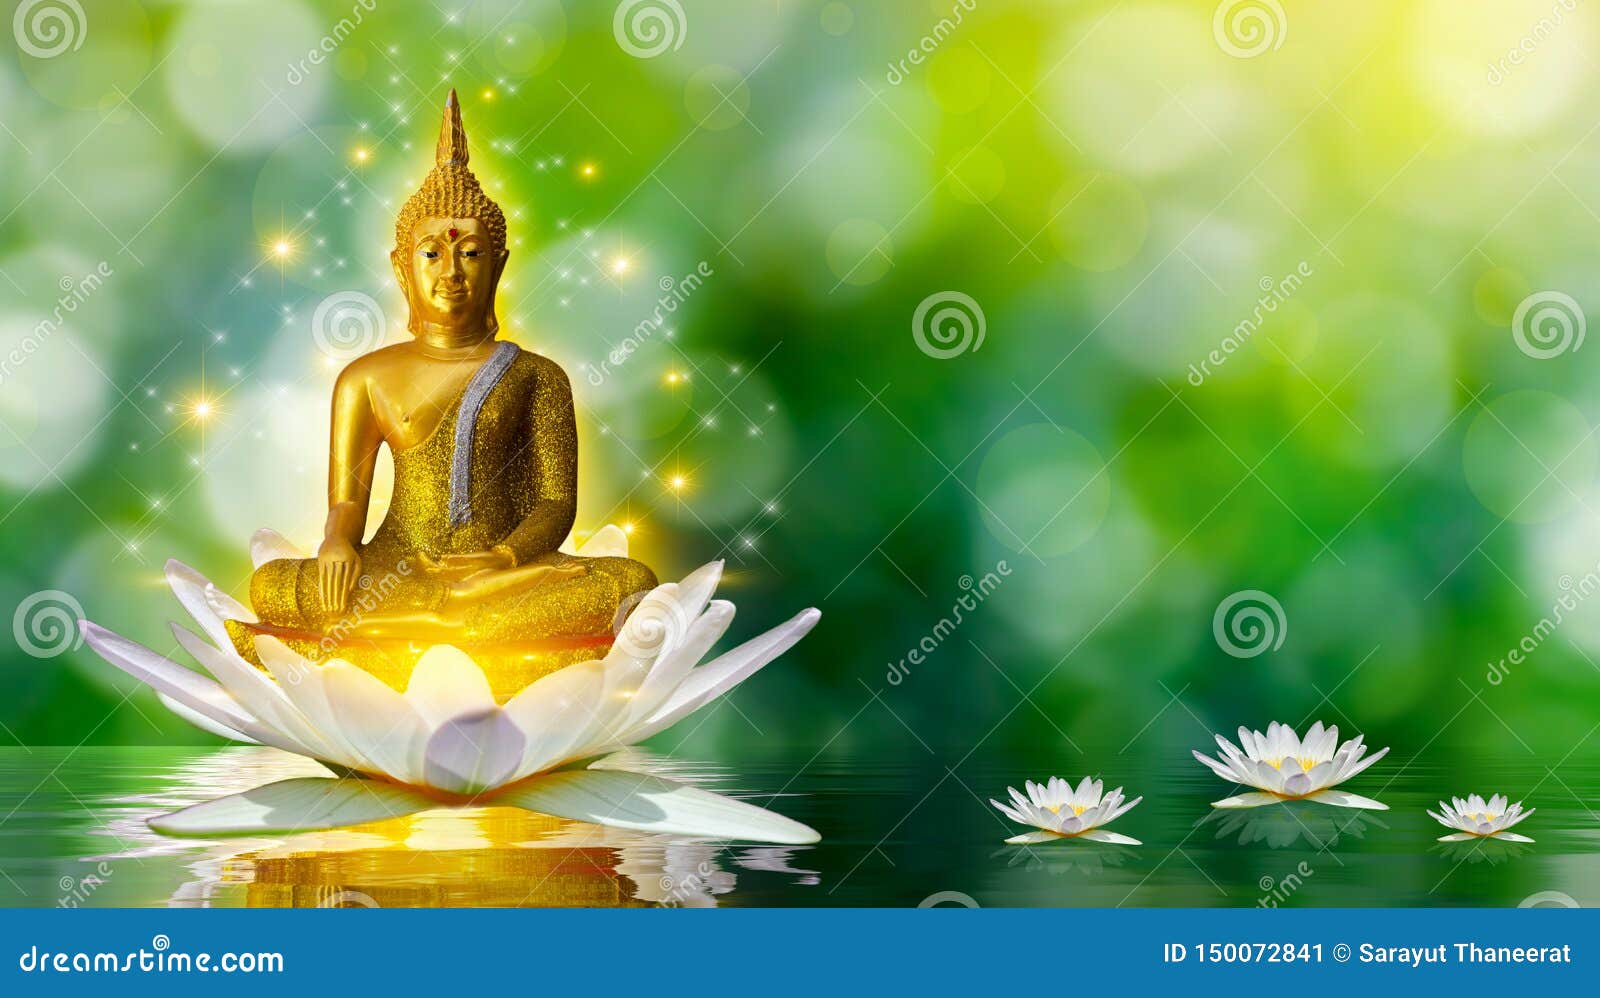 Lotus Bouddha De L Eau De Statue De Bouddha Se Tenant Sur La Fleur De Lotus Sur Le Fond Orange Image Stock Image Du Bouddhisme Fond